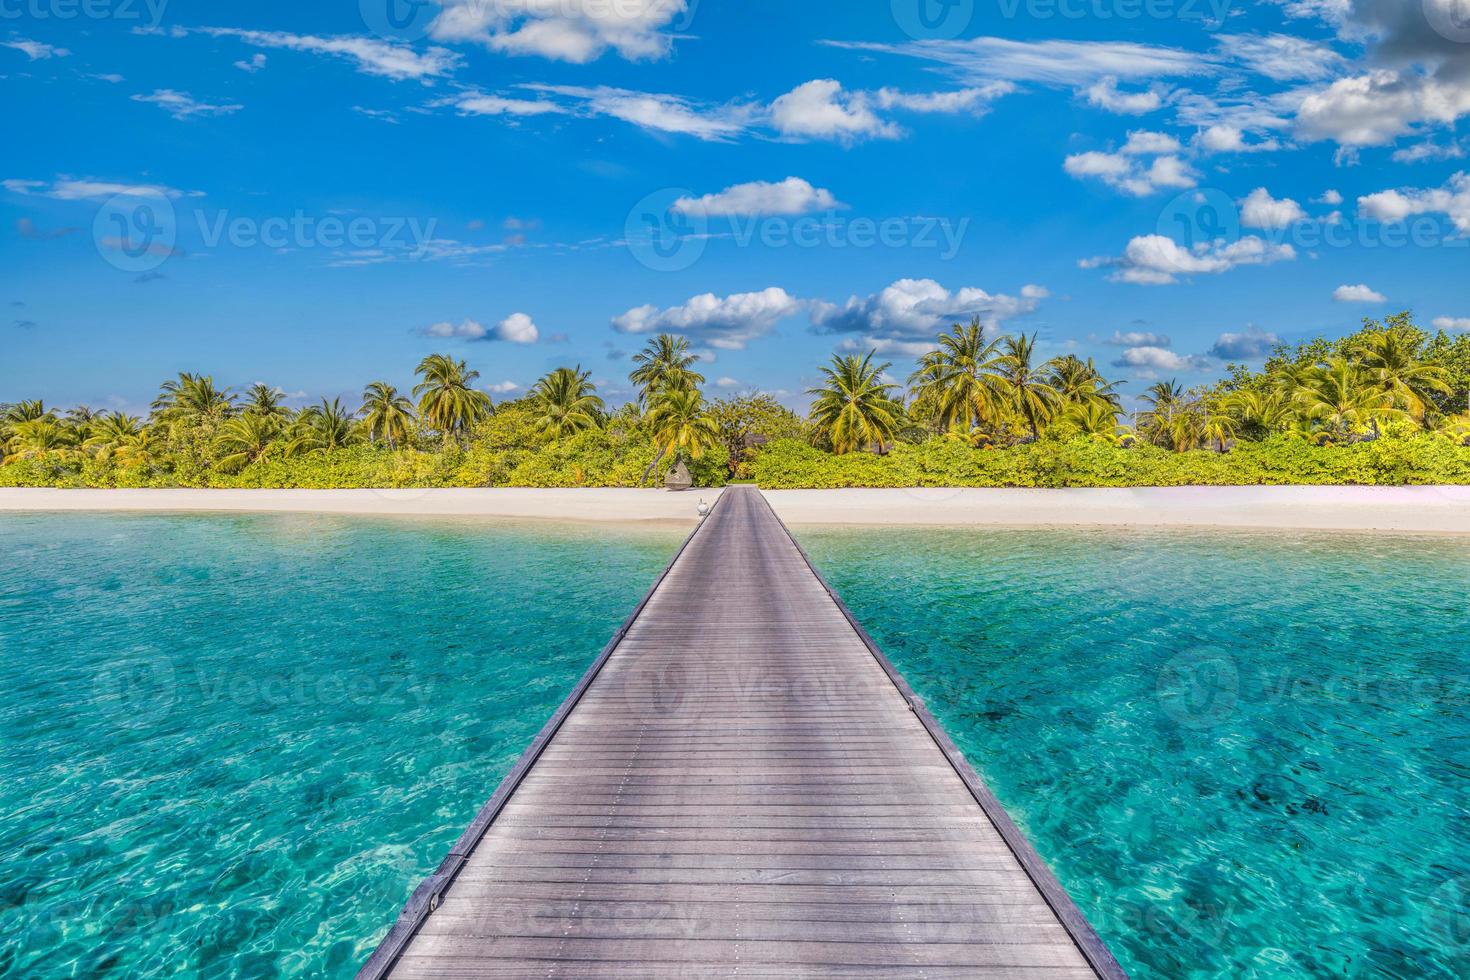 geweldig panorama op de Malediven. luxe resort villa's zeegezicht met palmbomen, wit zand en blauwe lucht. mooi zomers landschap. geweldige strandachtergrond voor vakantievakantie. paradijselijk eiland concept foto